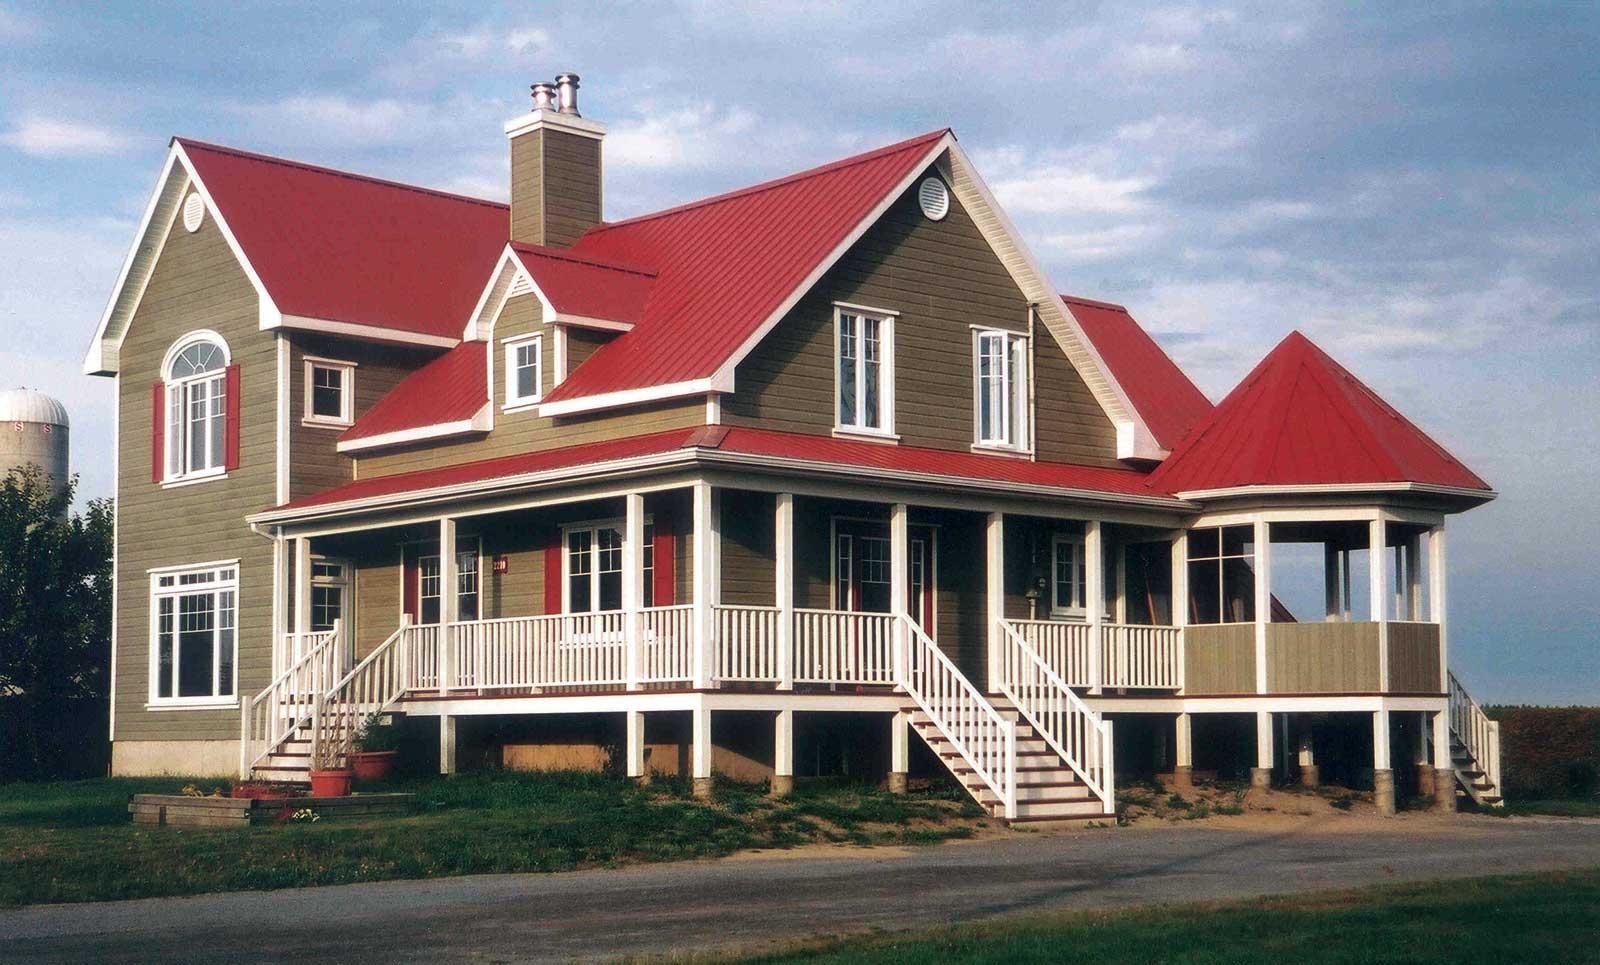 Nhà 2 tầng phong cách châu Âu với mái tôn đỏ đậm